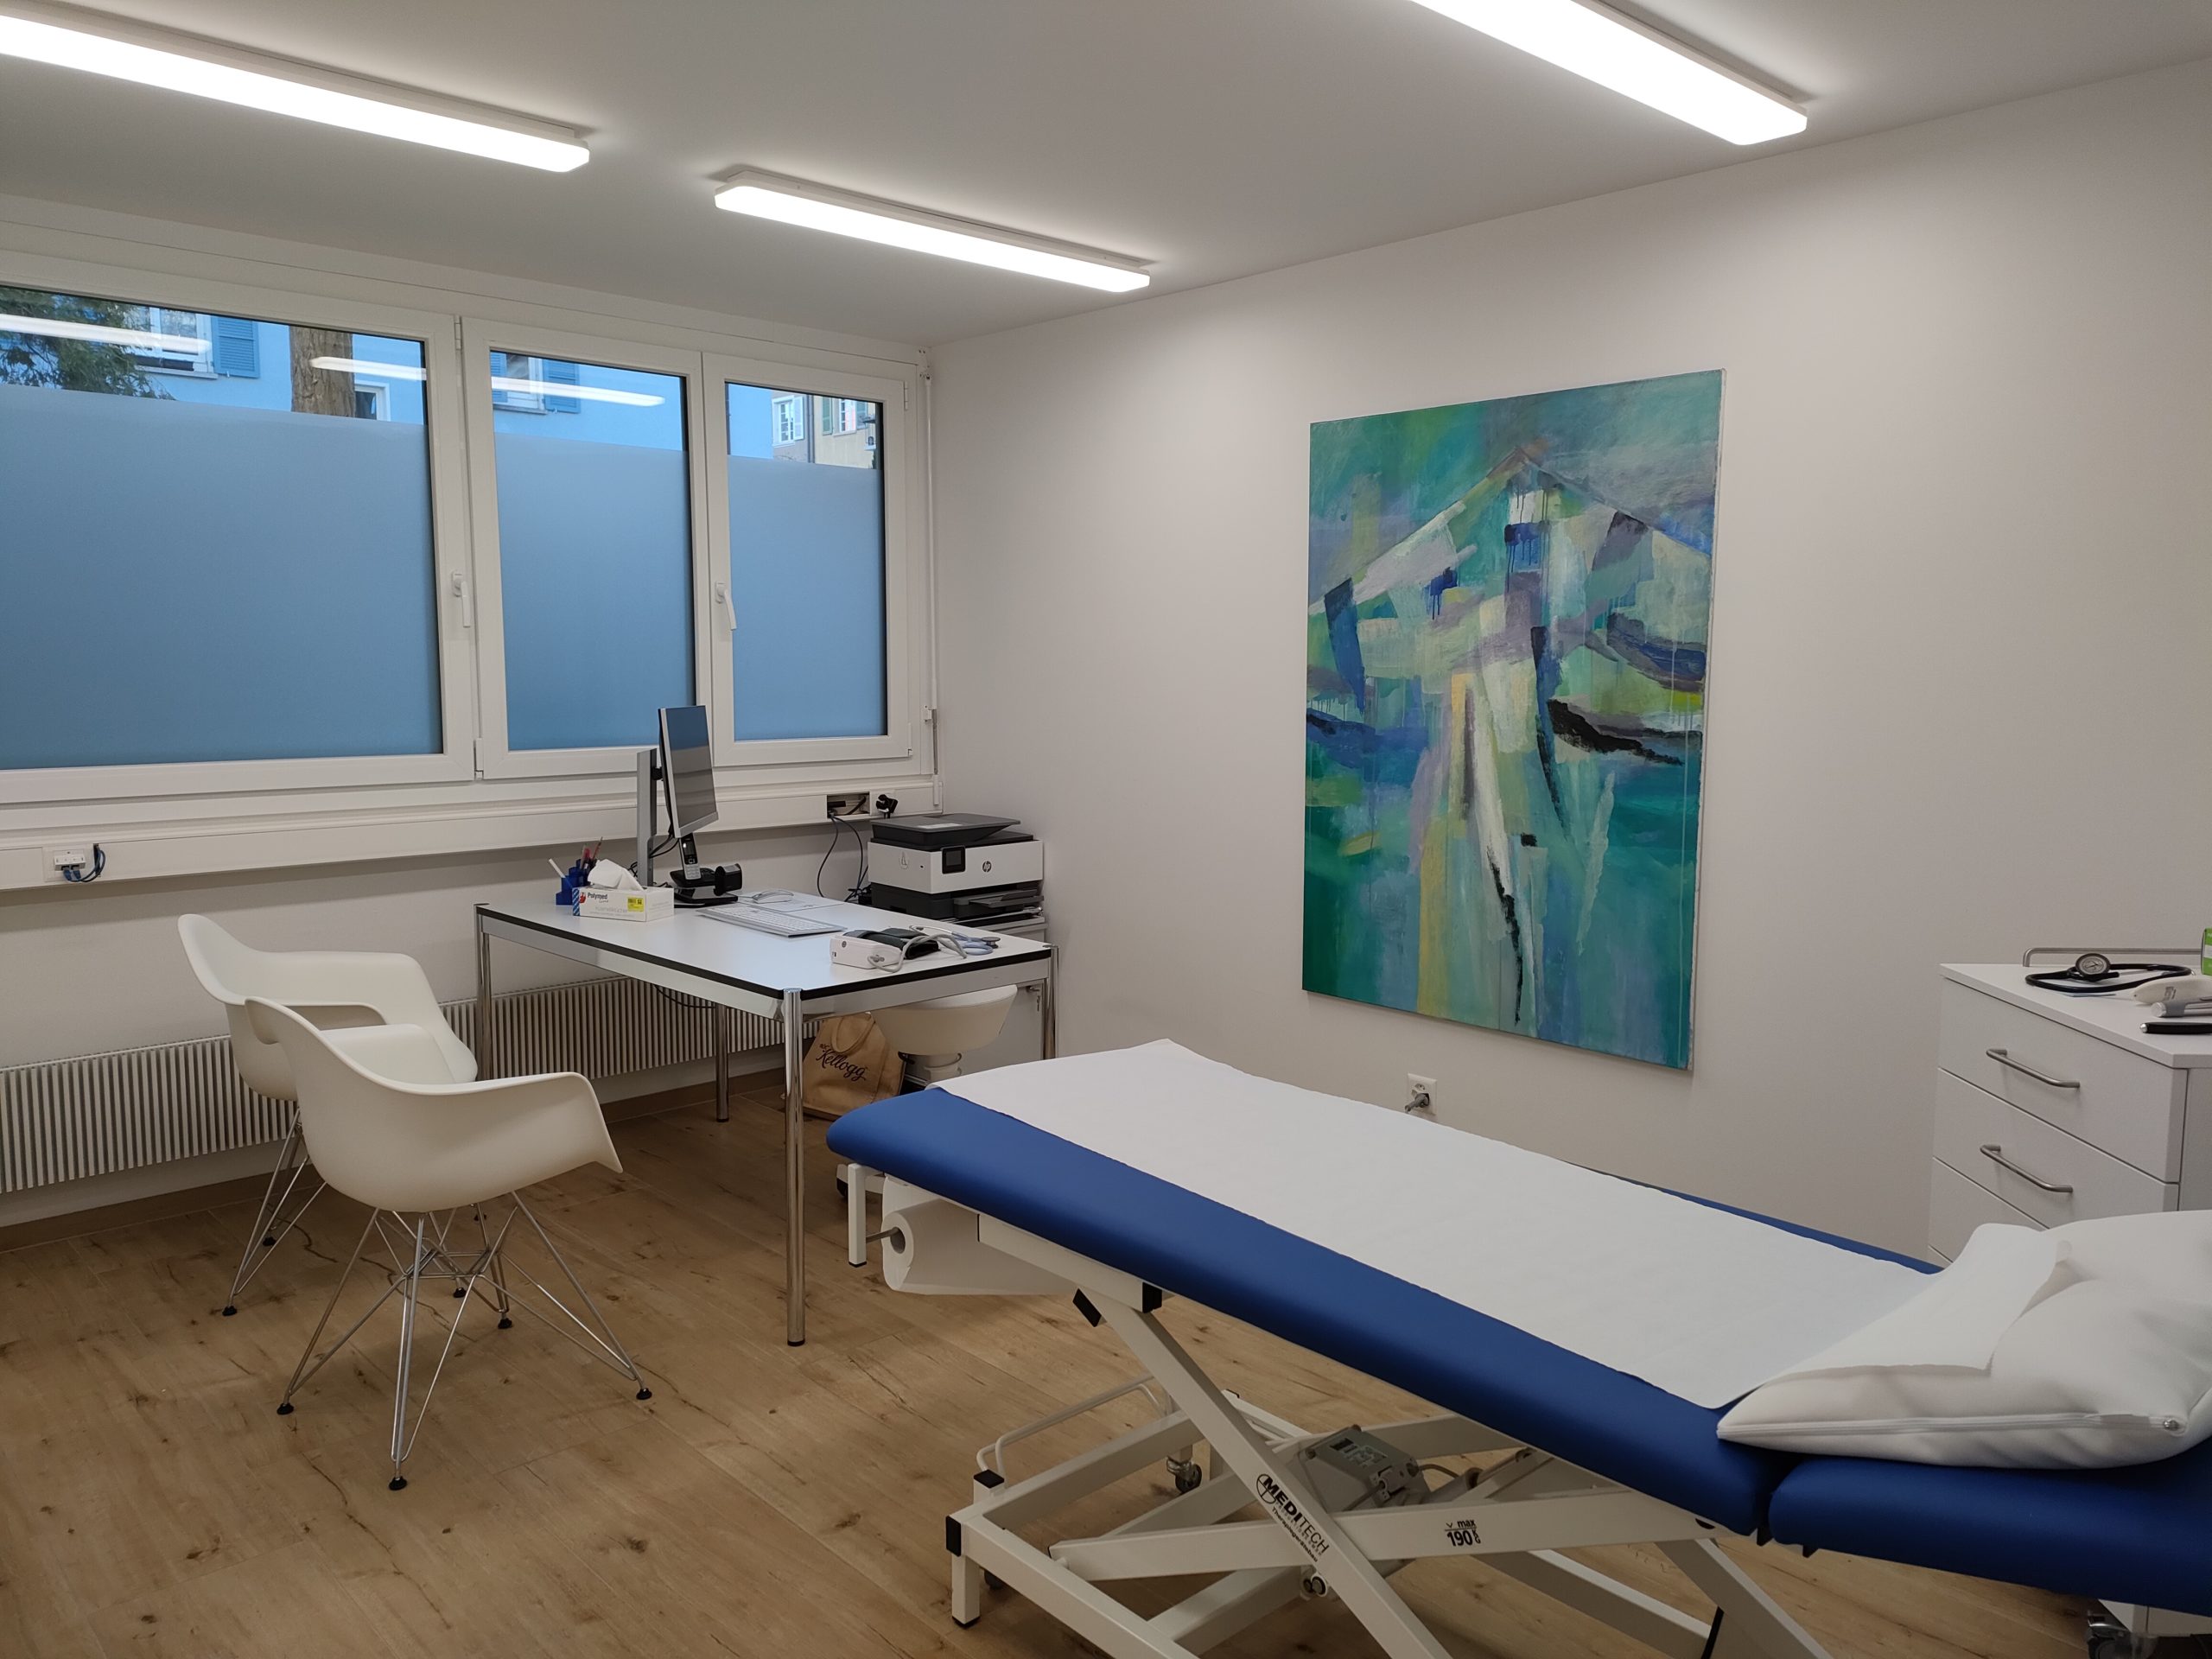 Ein Patientenzimmer mit einem blau-weissen Bett, Schreibtisch, Stühle und ein Gemälde an der Wand.